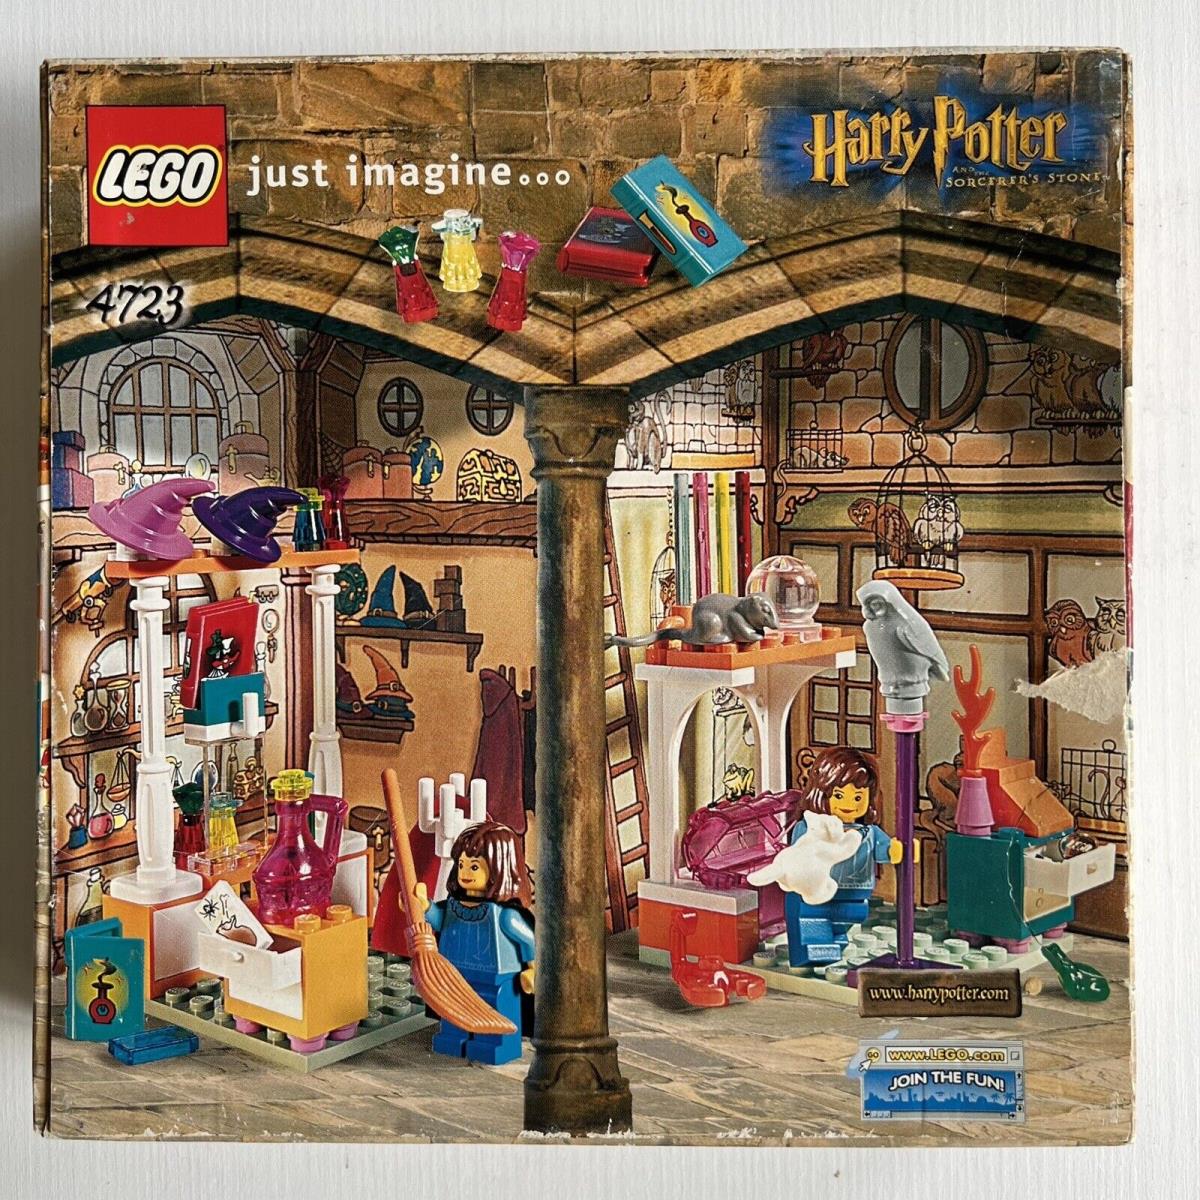 Vintage 2001 Lego Harry Potter: Diagon Alley Shops 4723